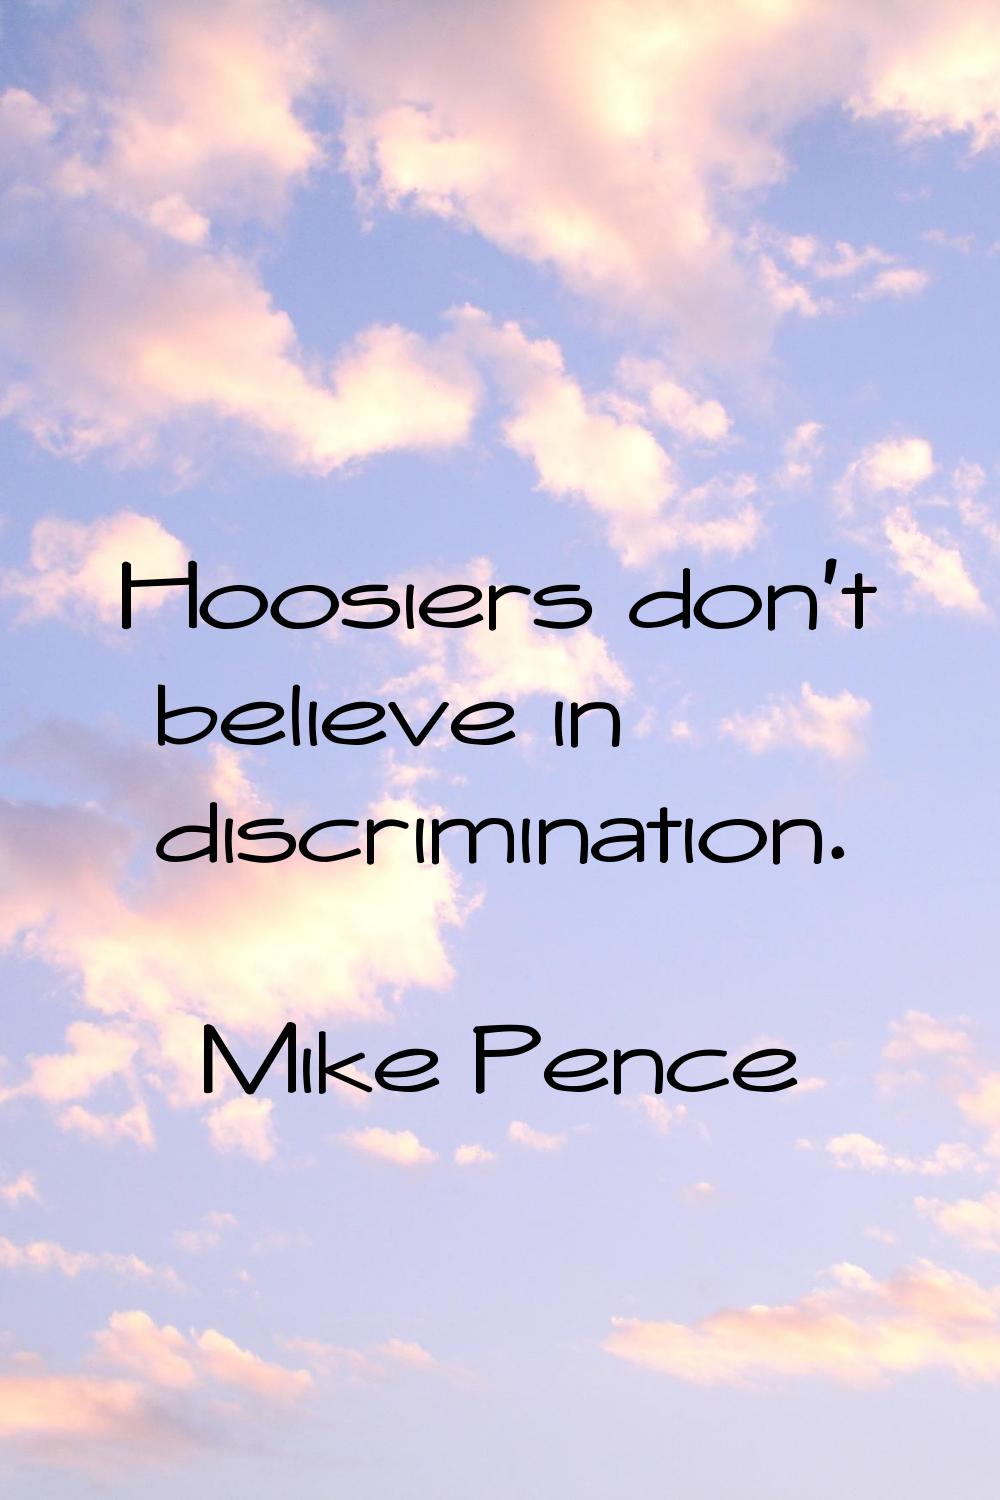 Hoosiers don't believe in discrimination.